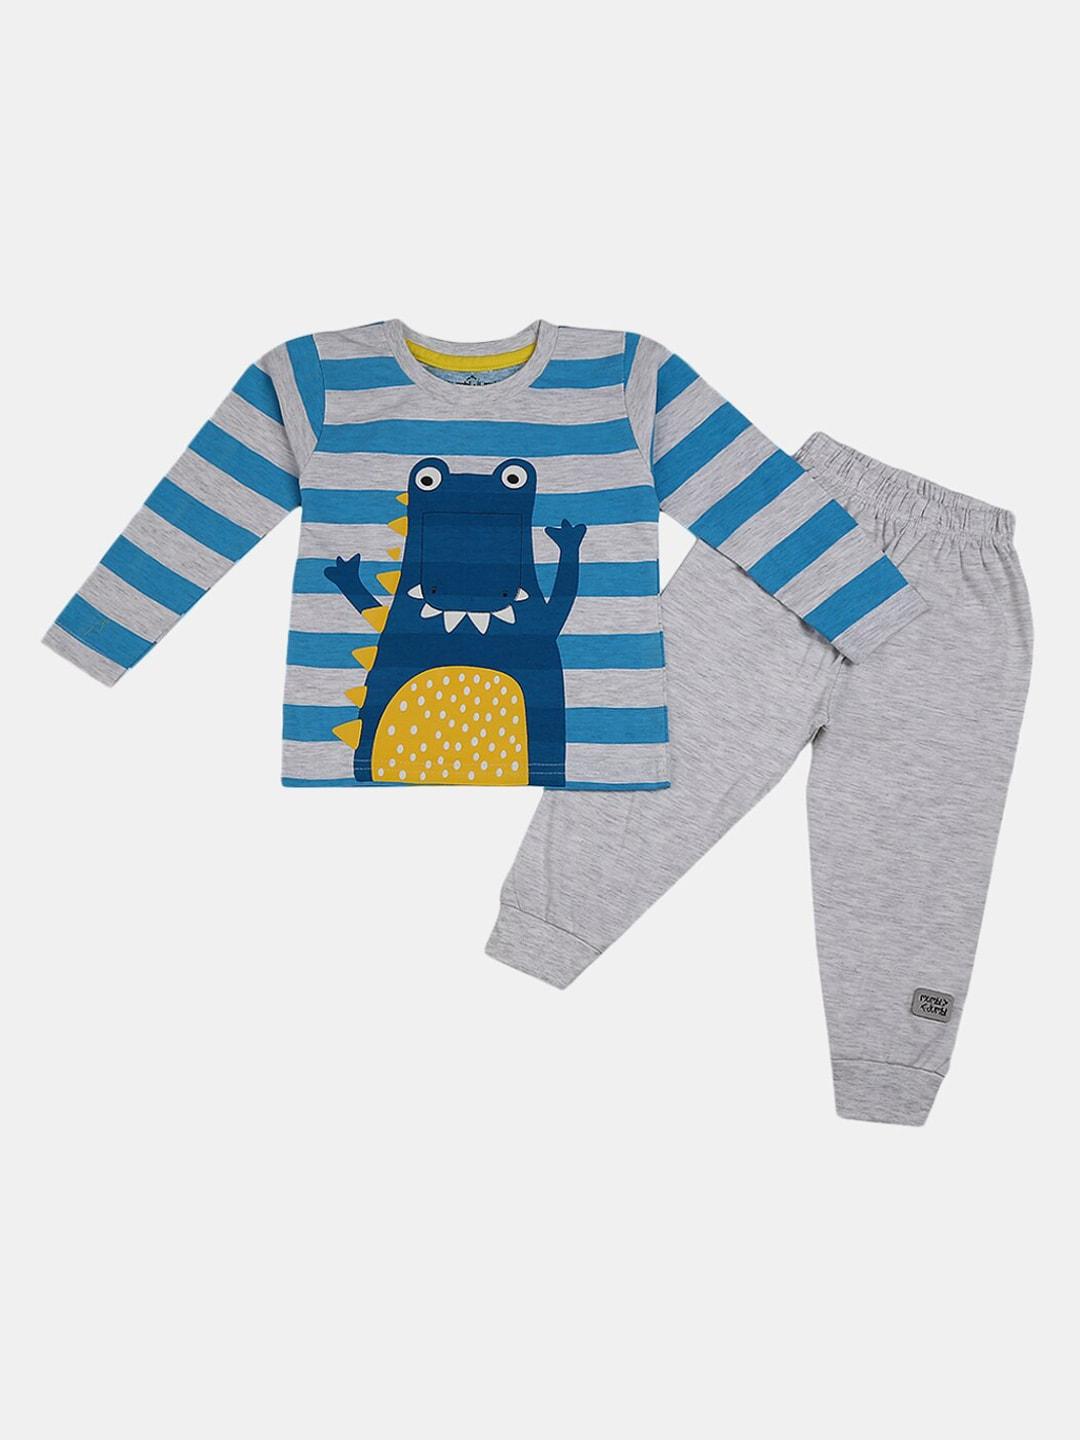 v-mart-infant-kids-grey-&-blue-printed-t-shirt-with-pyjamas